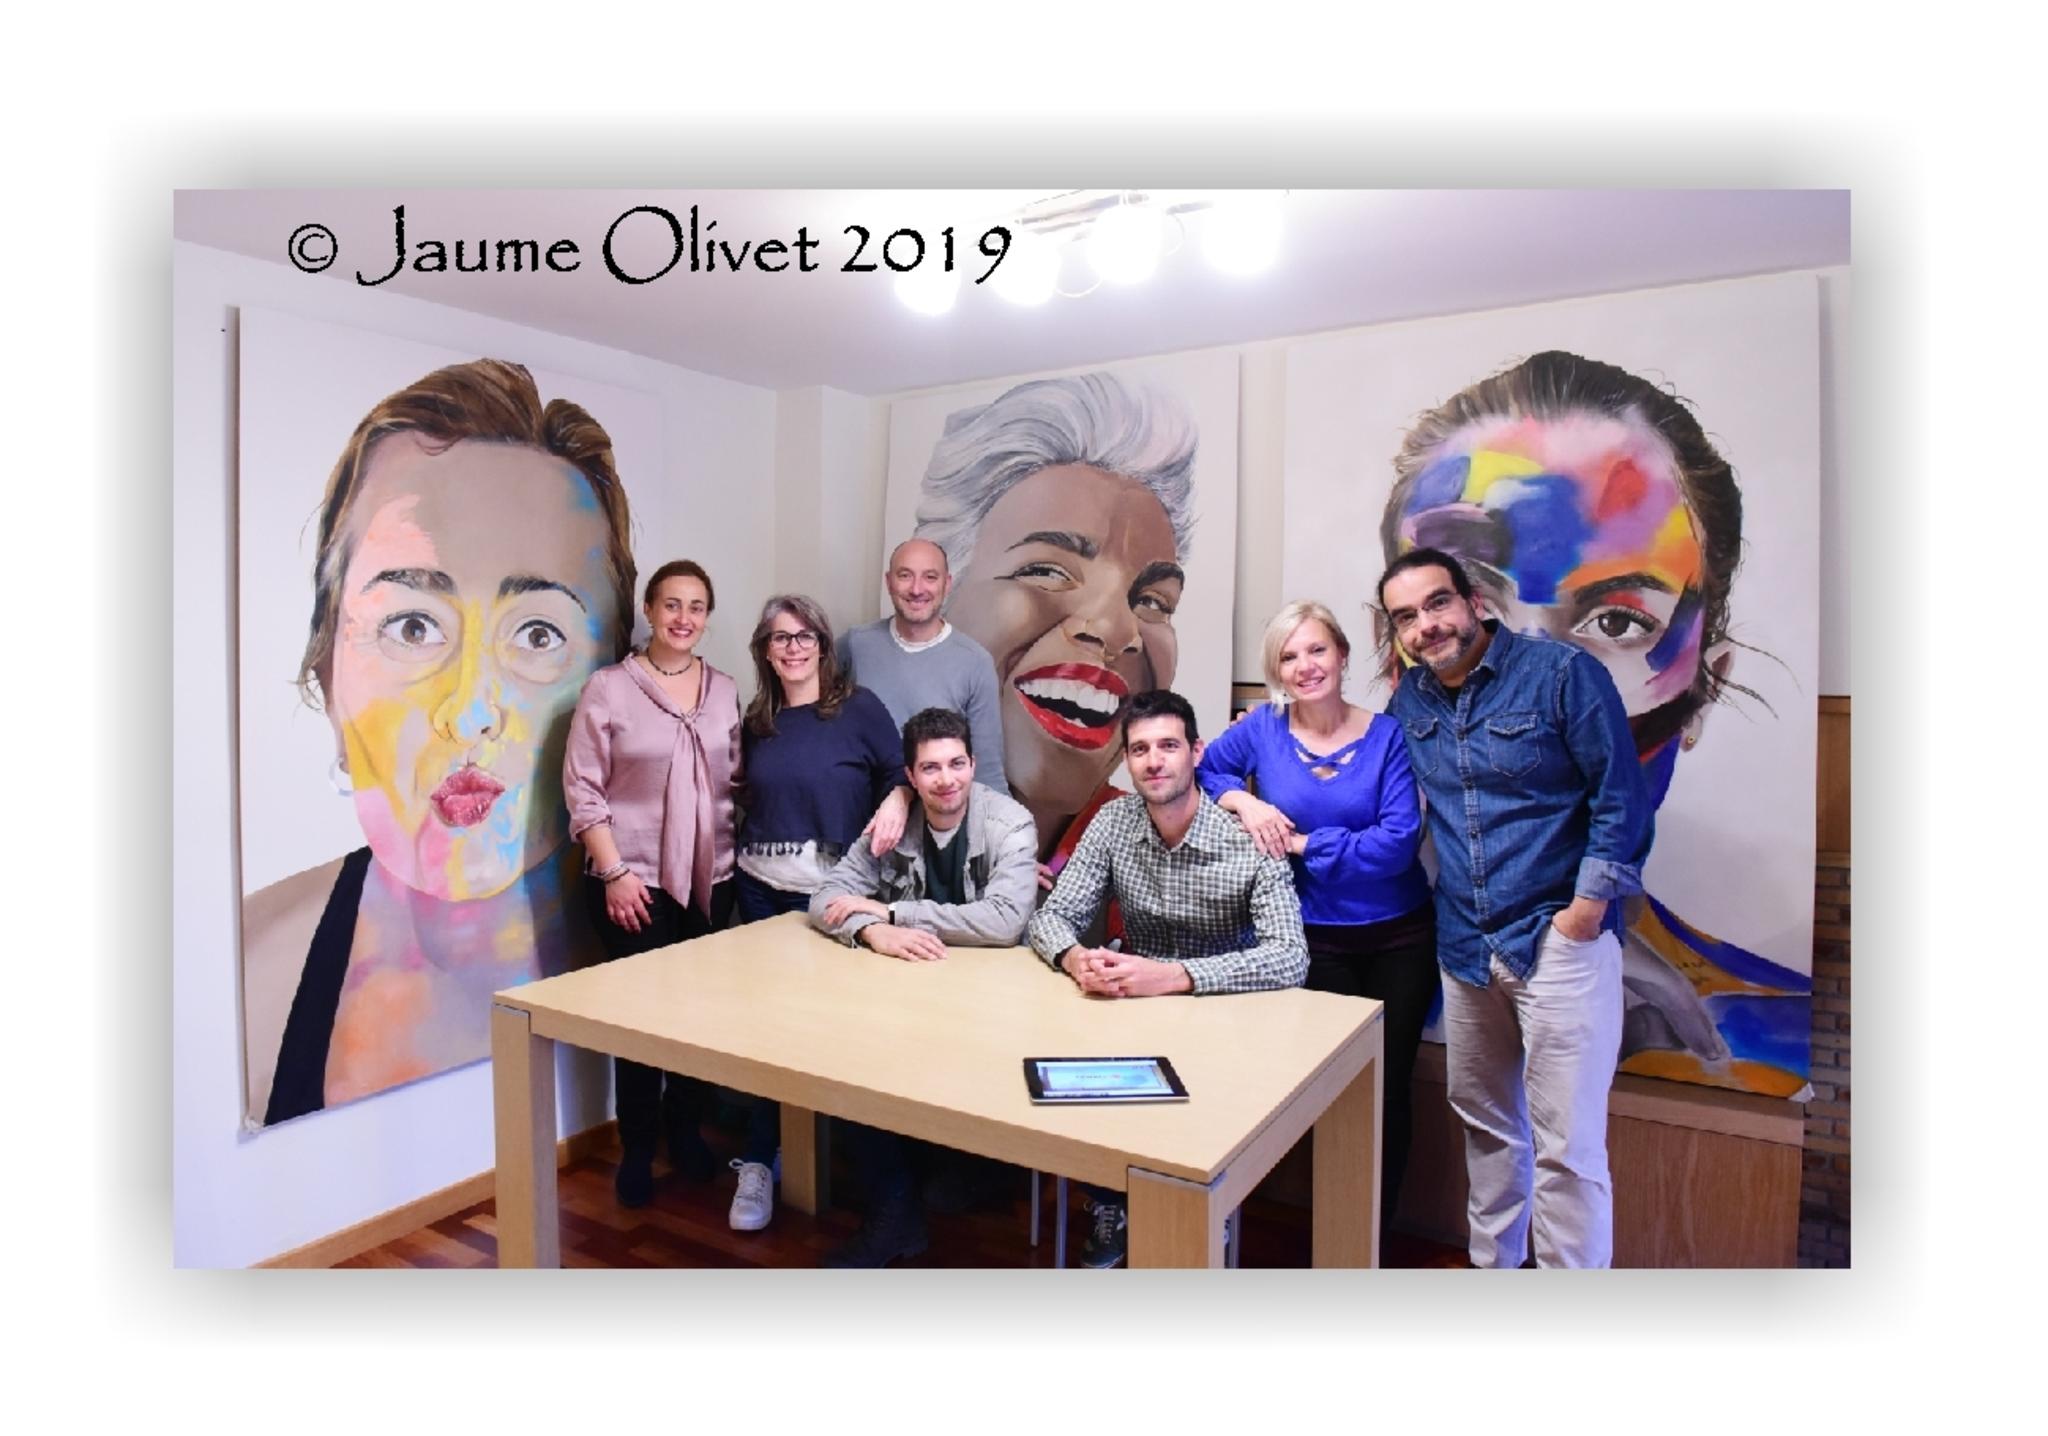 © Jaume Olivet 2019